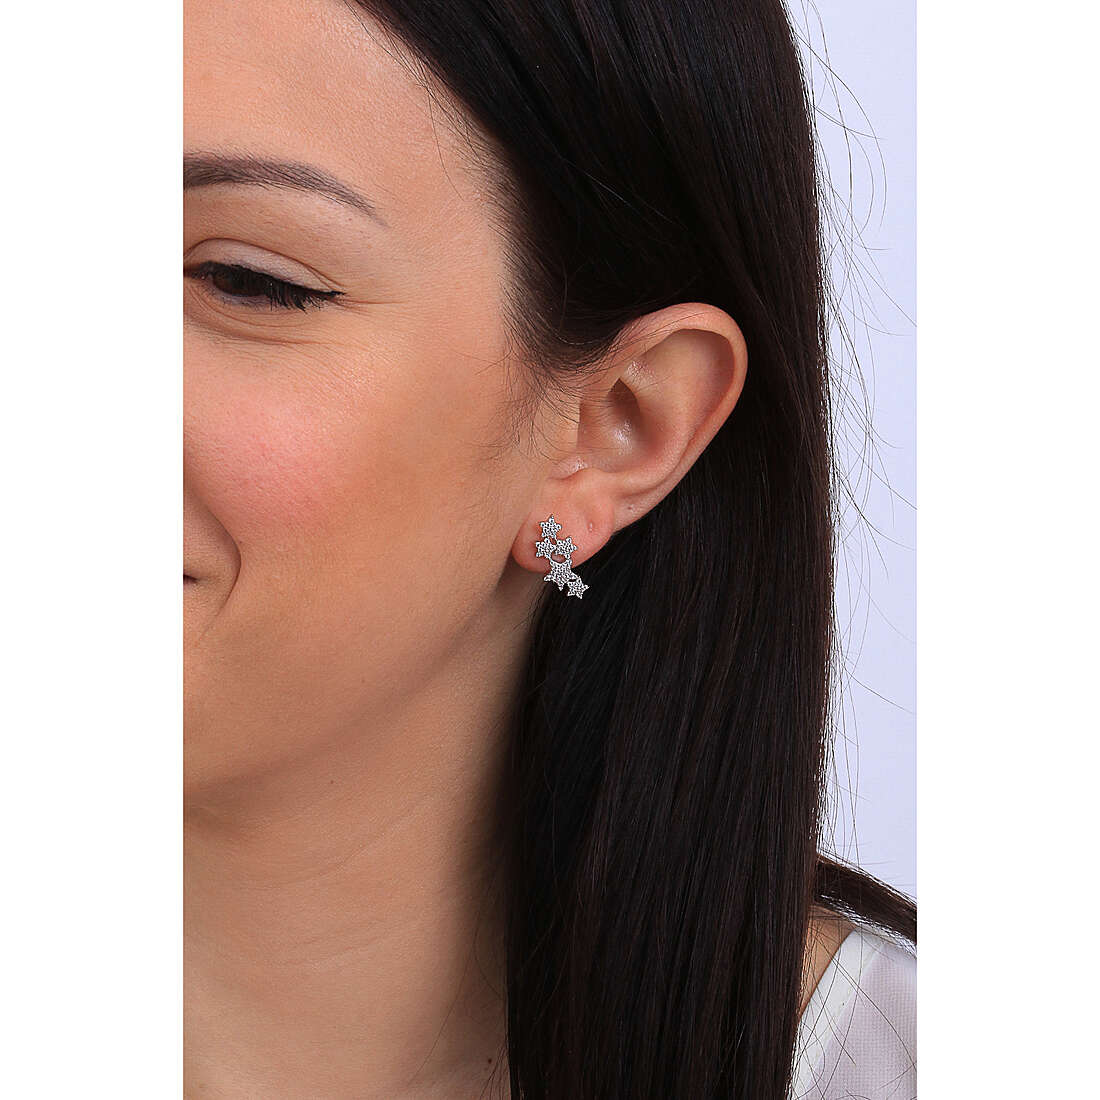 Amen earrings Diamond woman EMSBBZ wearing